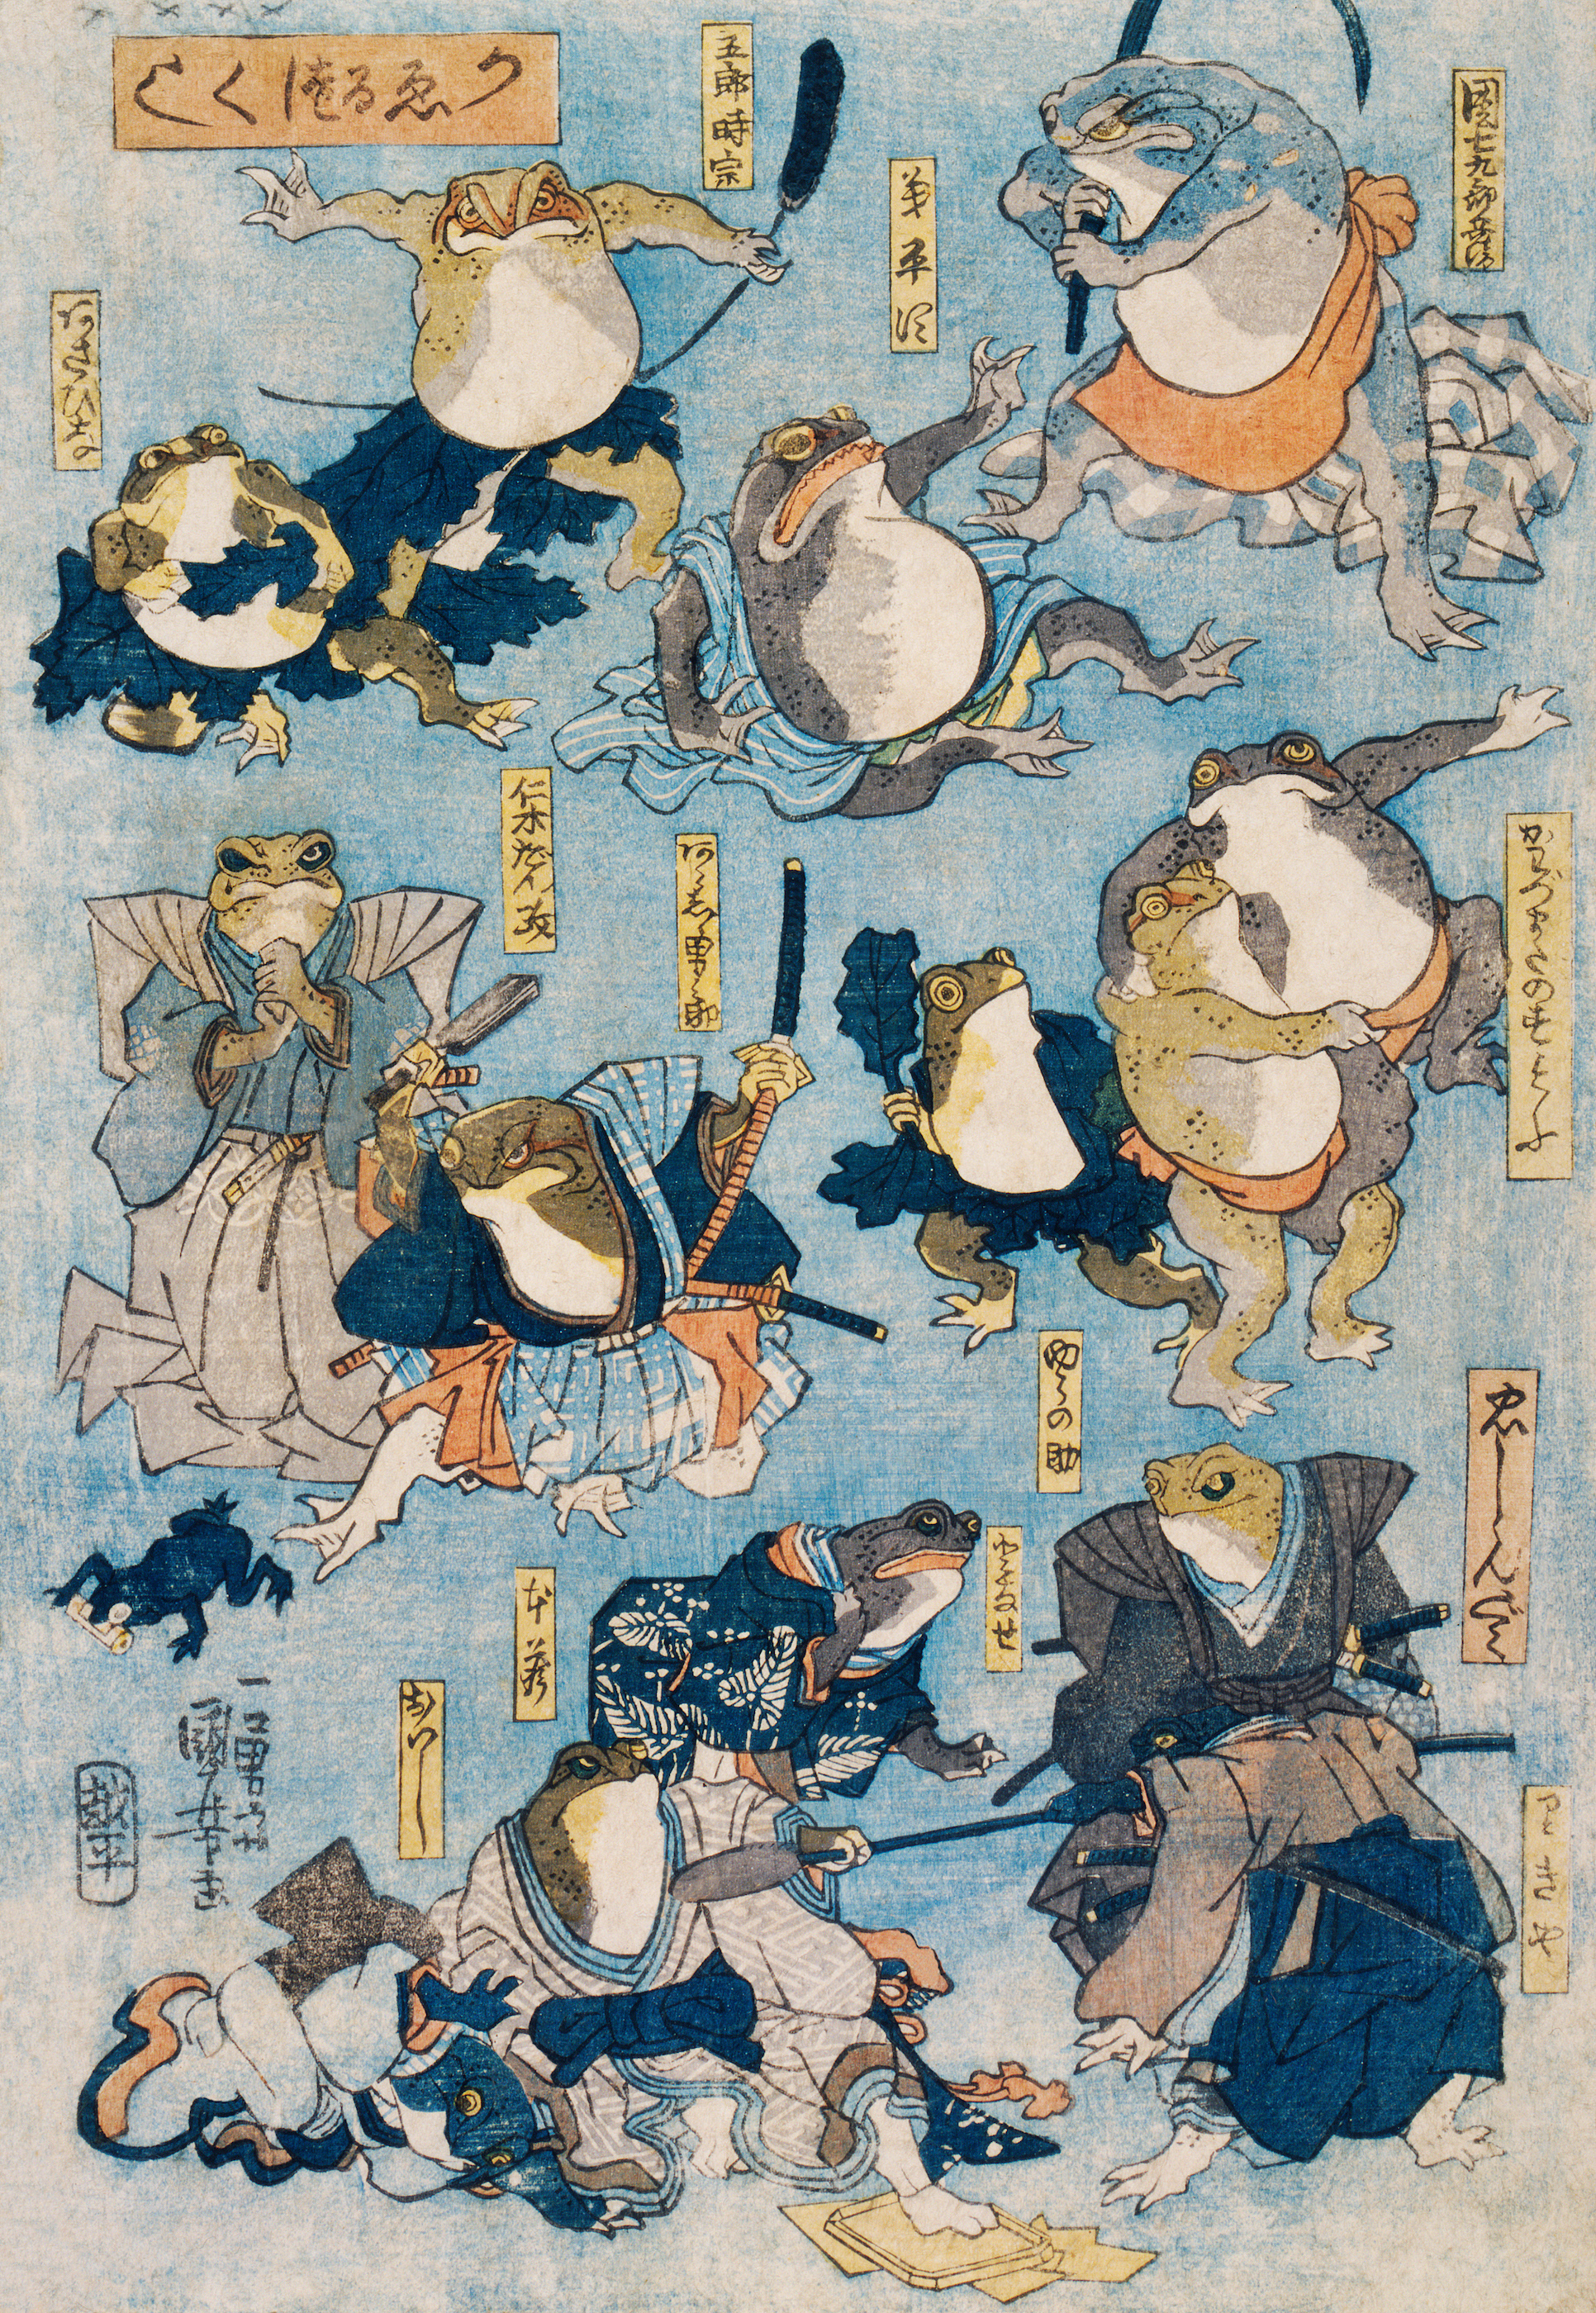 Βατράχια ενσαρκώνουν διάσημους ήρωες του θέατρου καμπούκι by Utagawa Kuniyoshi - c. 1875 